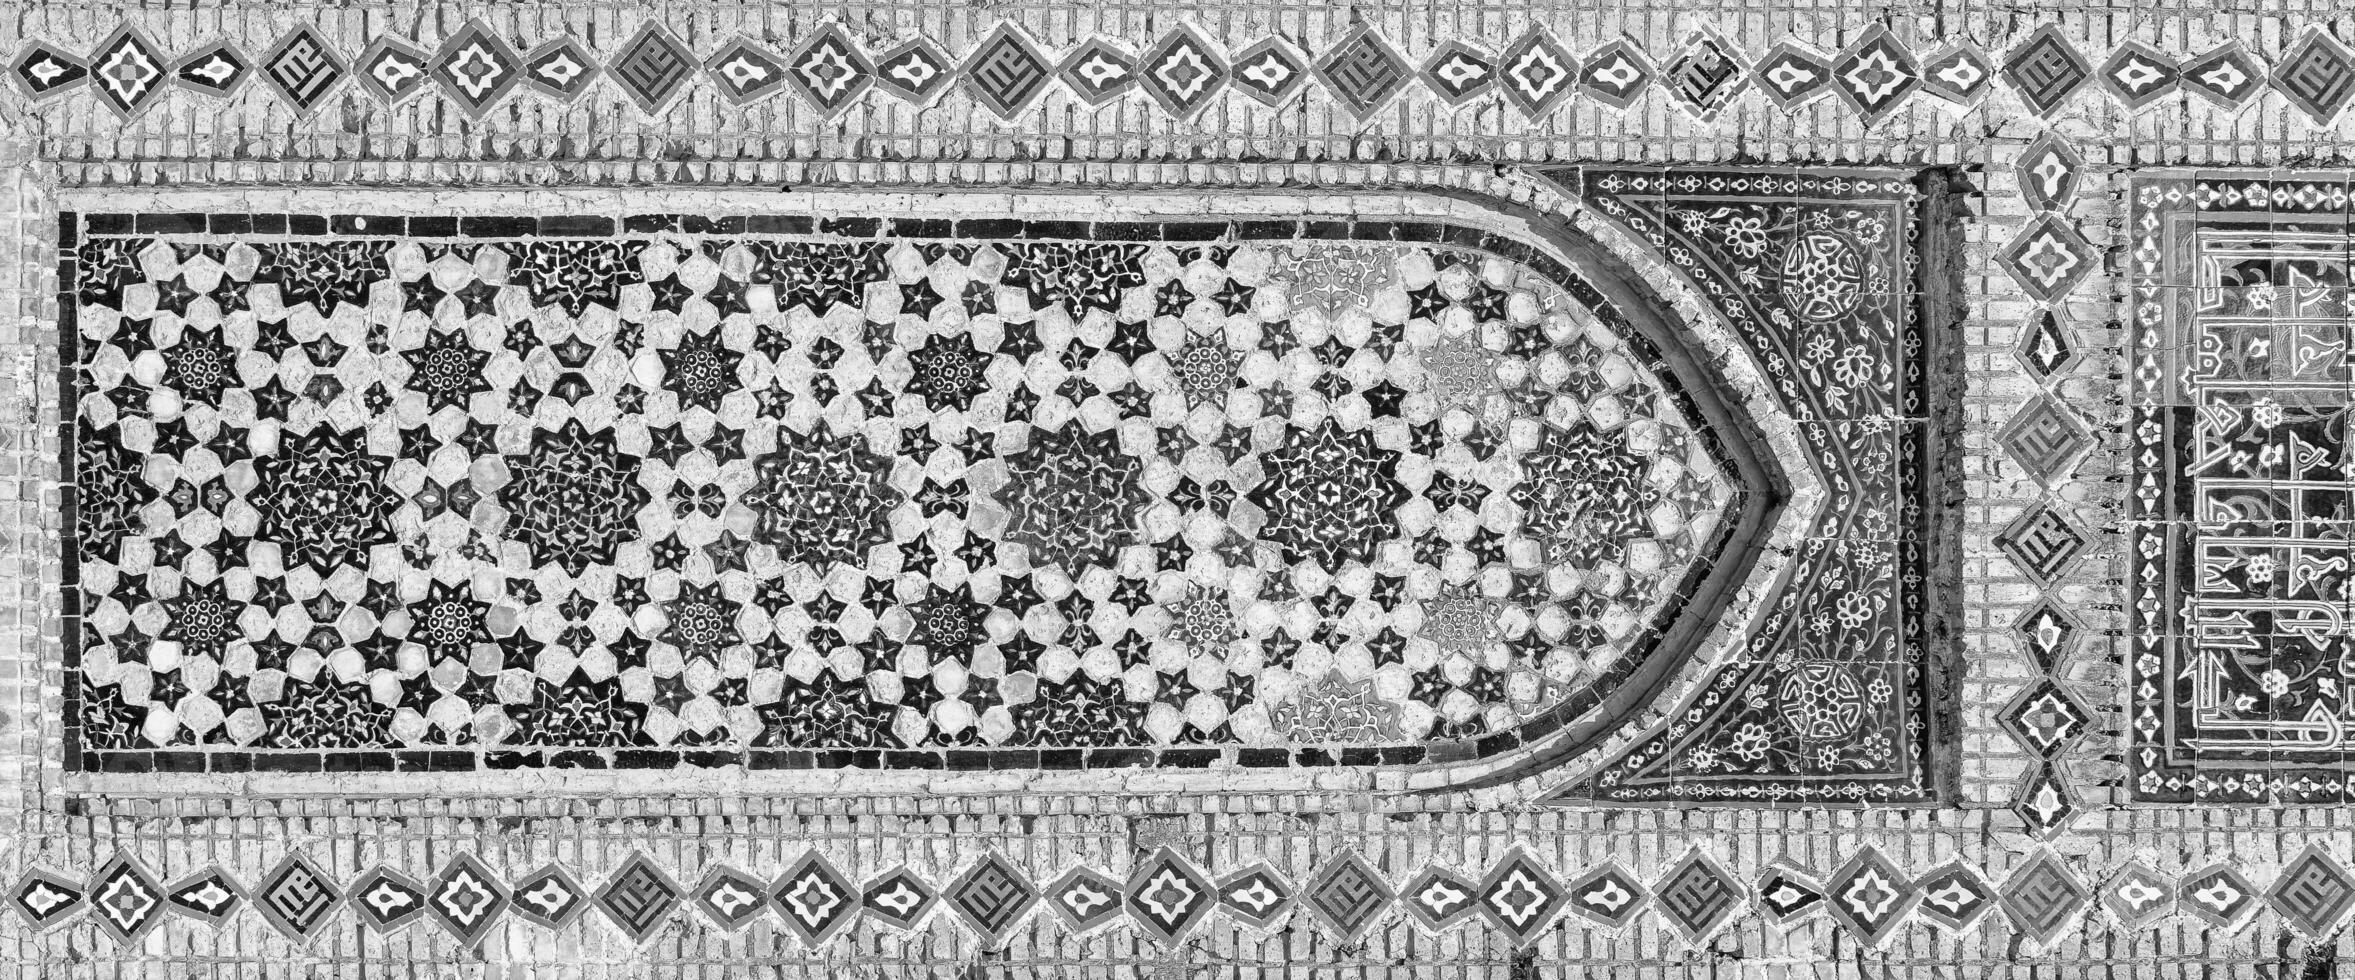 géométrique traditionnel islamique ornement. fragment de une céramique mosaïque. noir et blanche. photo